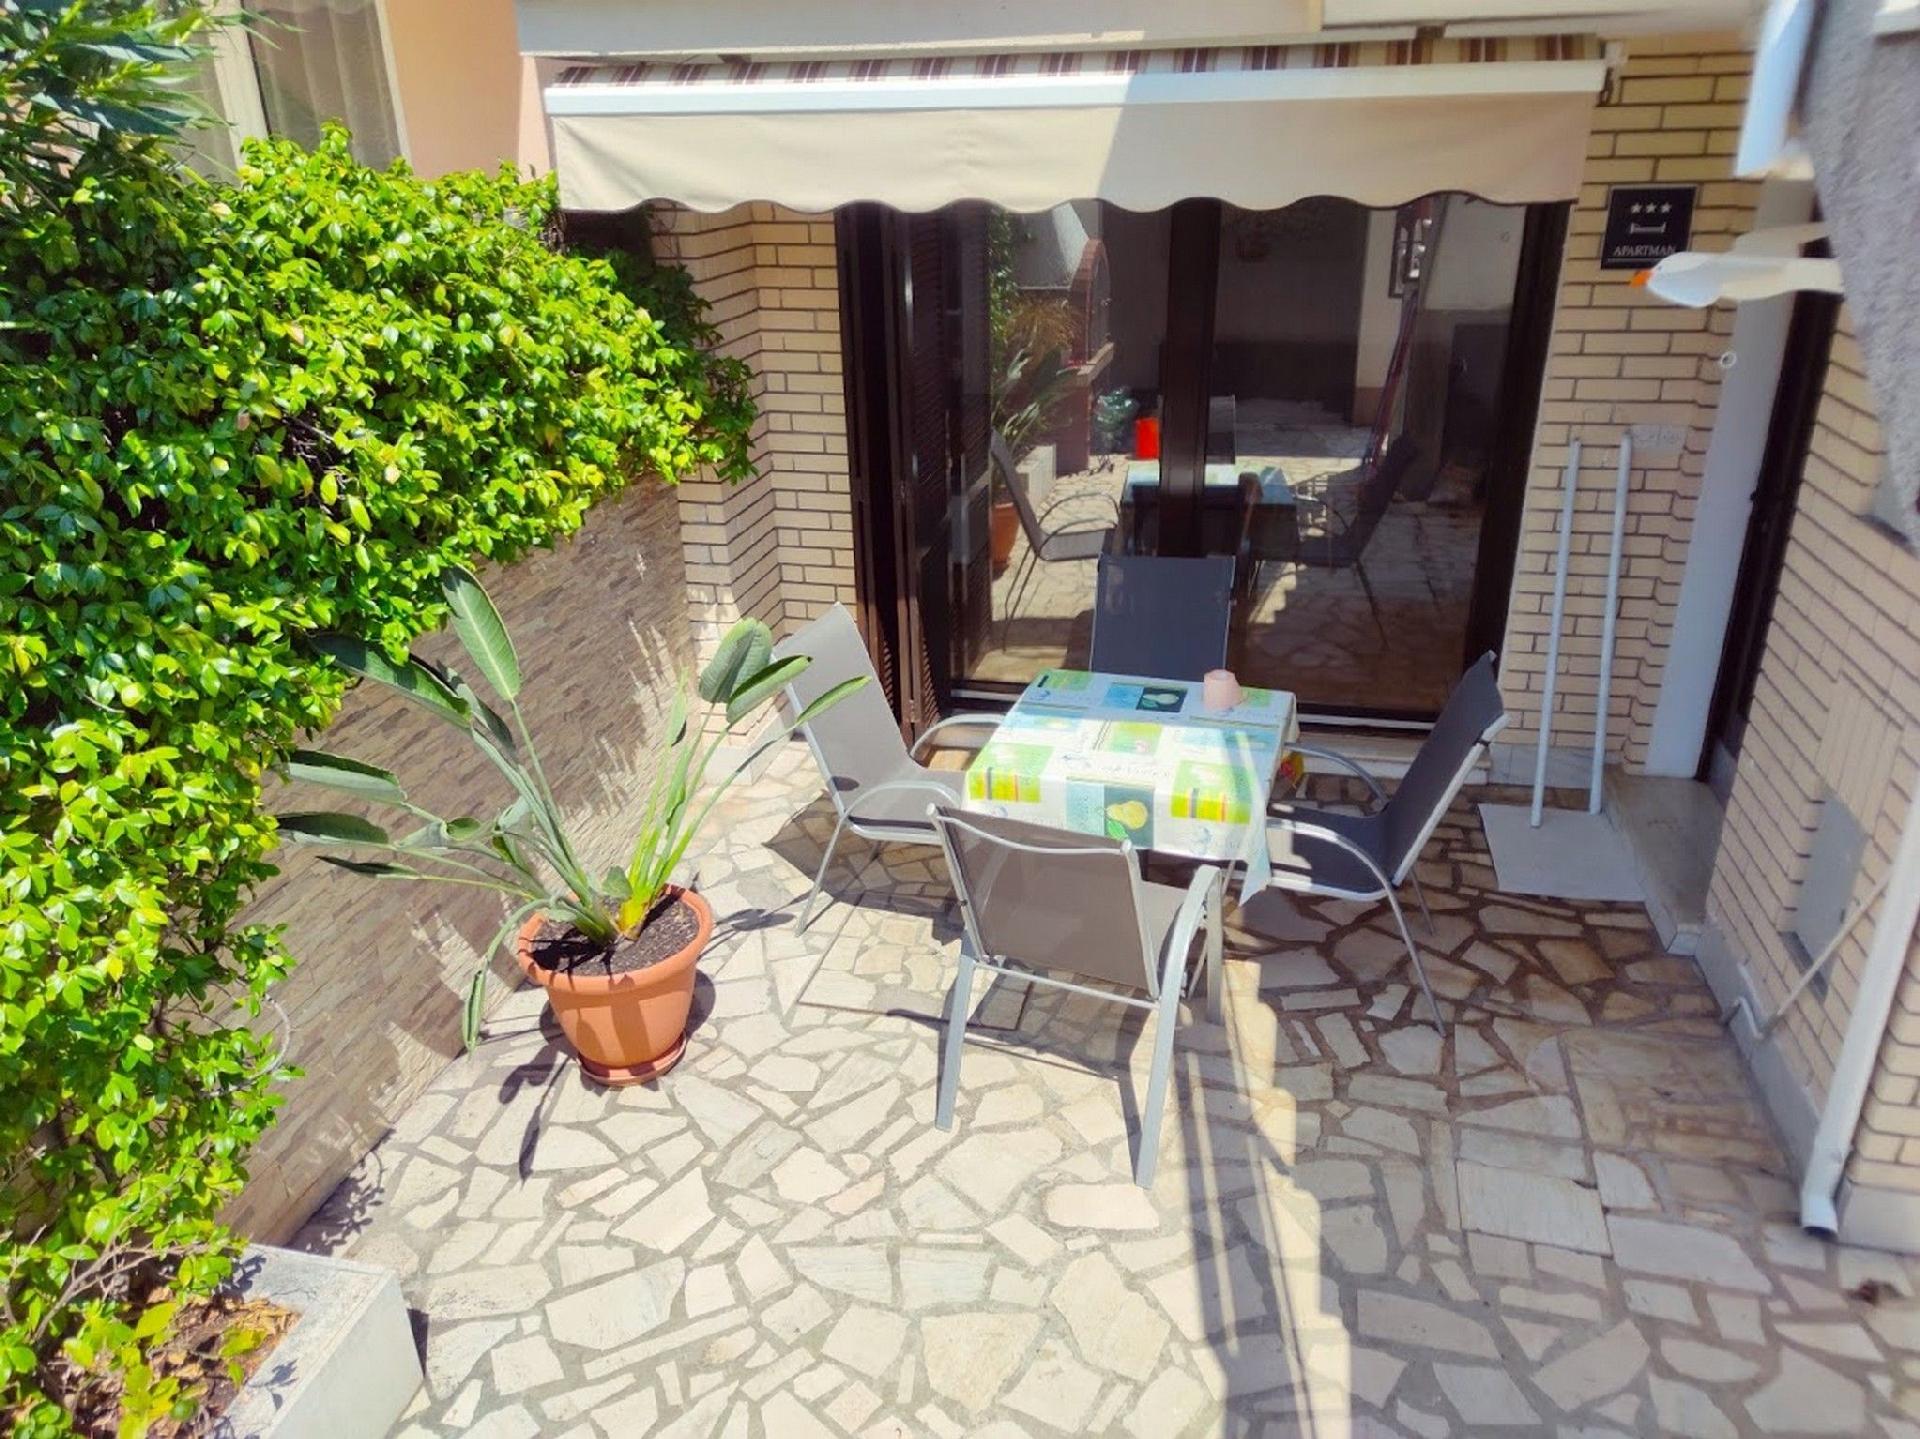 Wohnung in Pula mit Terrasse, Garten und Grill Ferienhaus in Kroatien